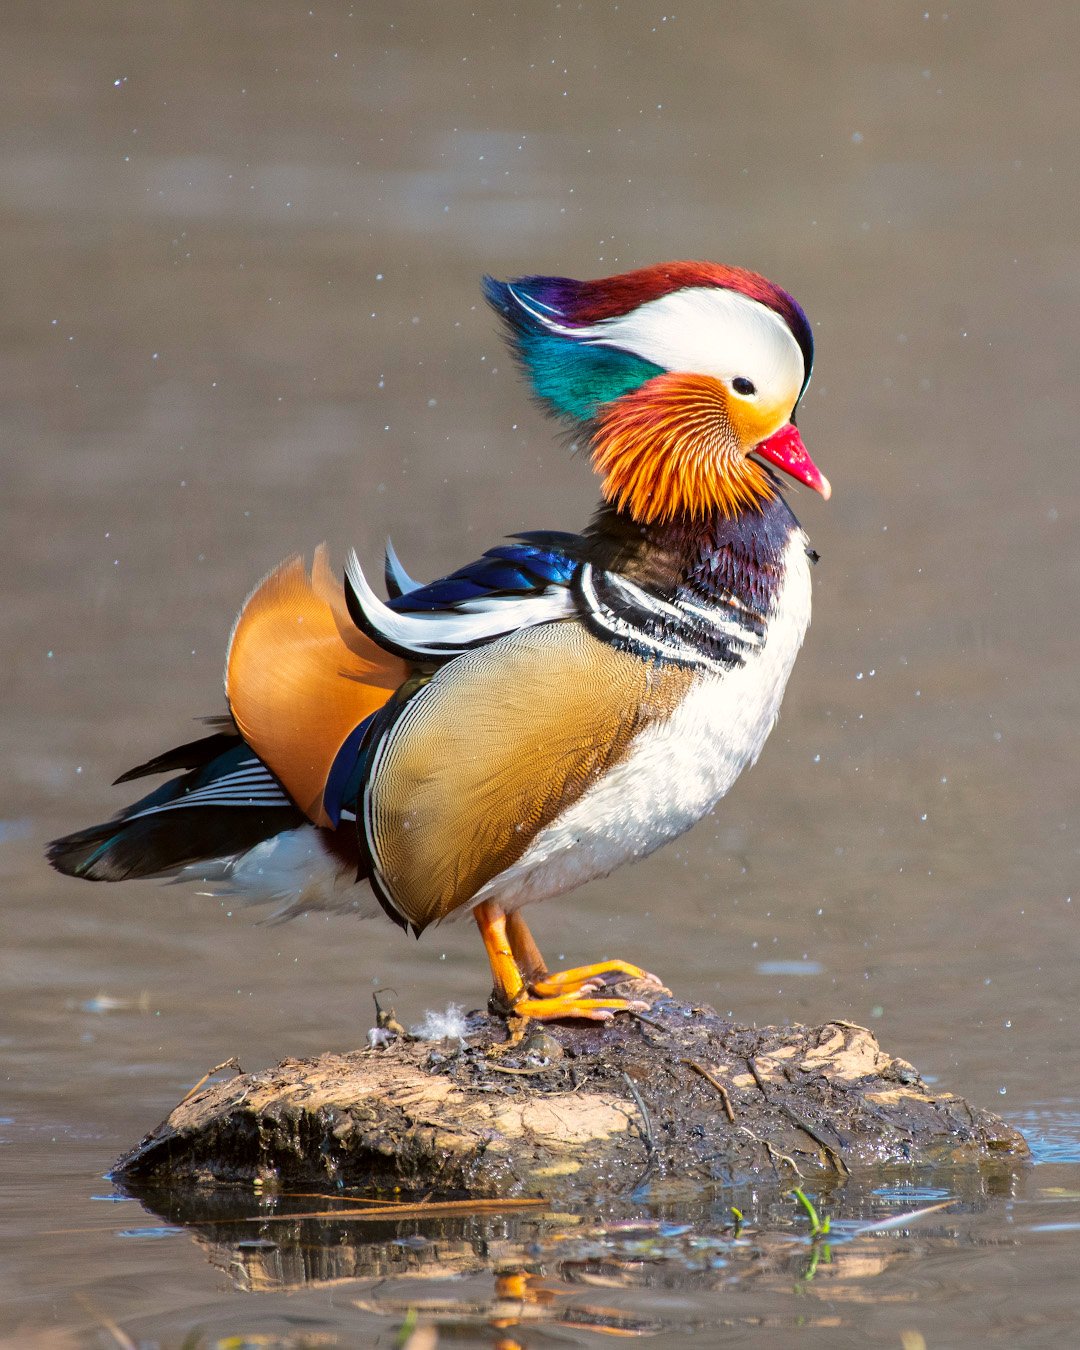 mandarinduck, duck, wildlife, water, lake, bird, colors, Иван Боровков